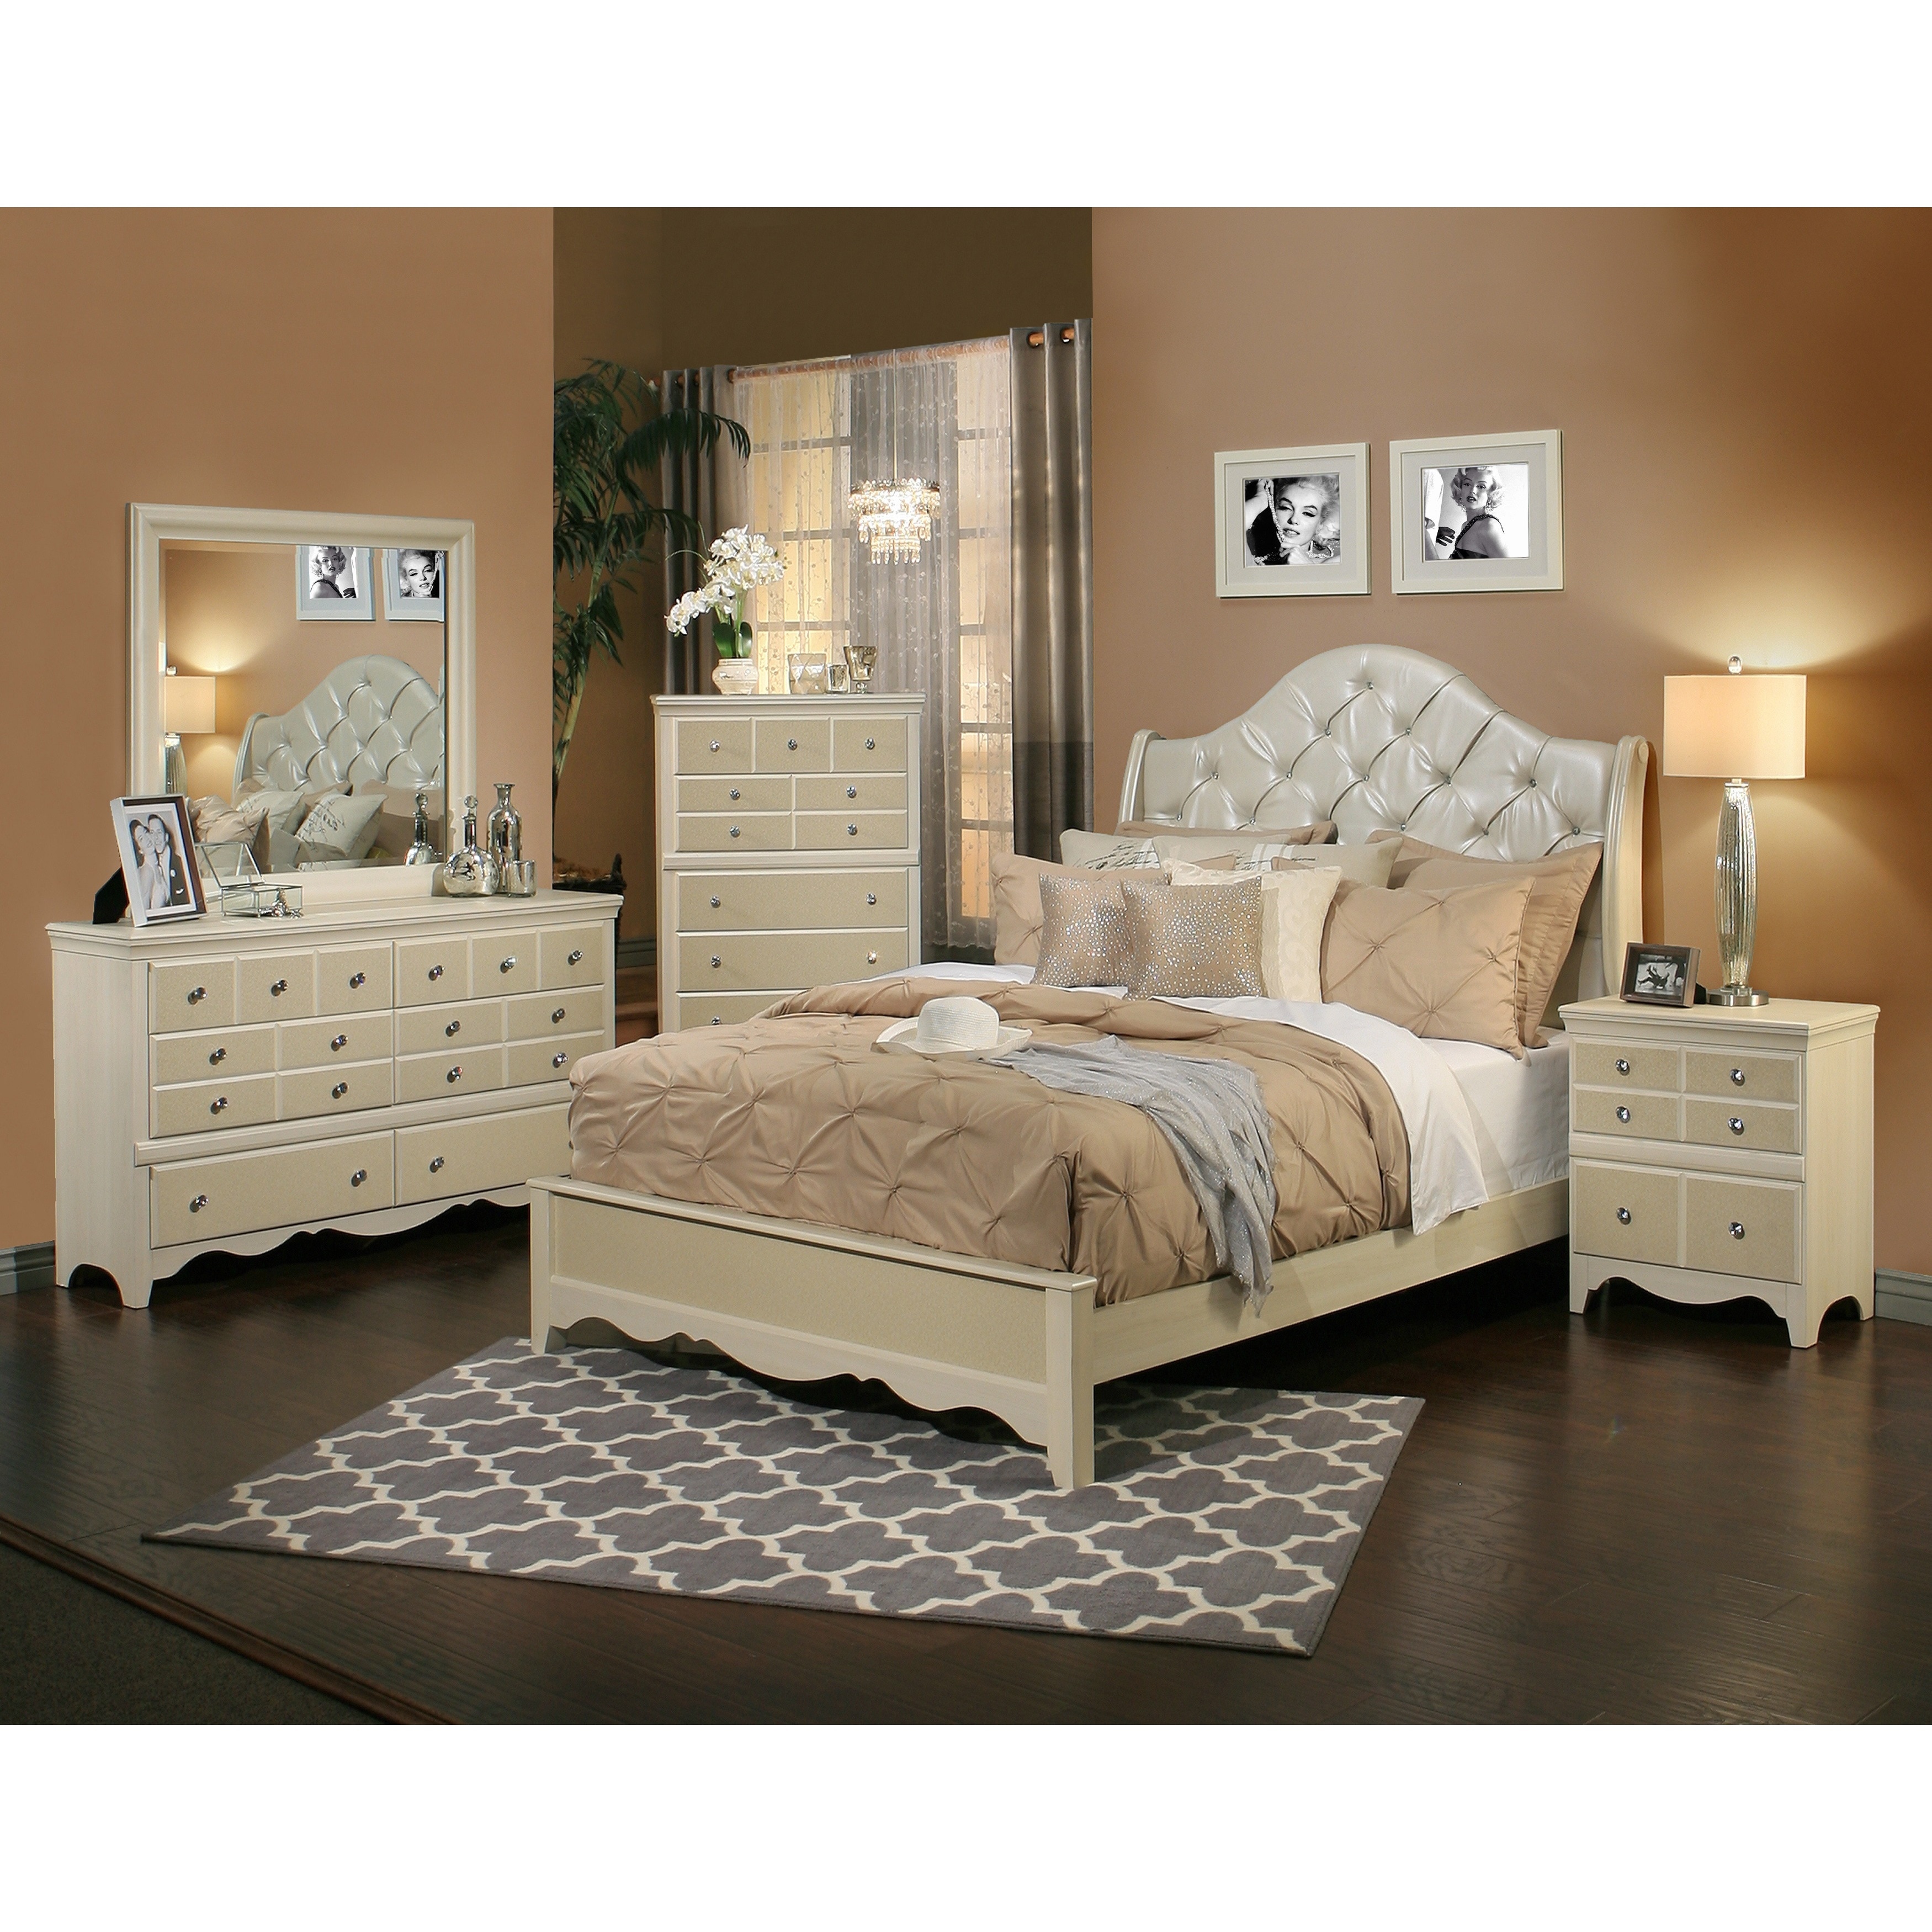 Shop Sandberg Furniture Marilyn Bed Overstock 10306851